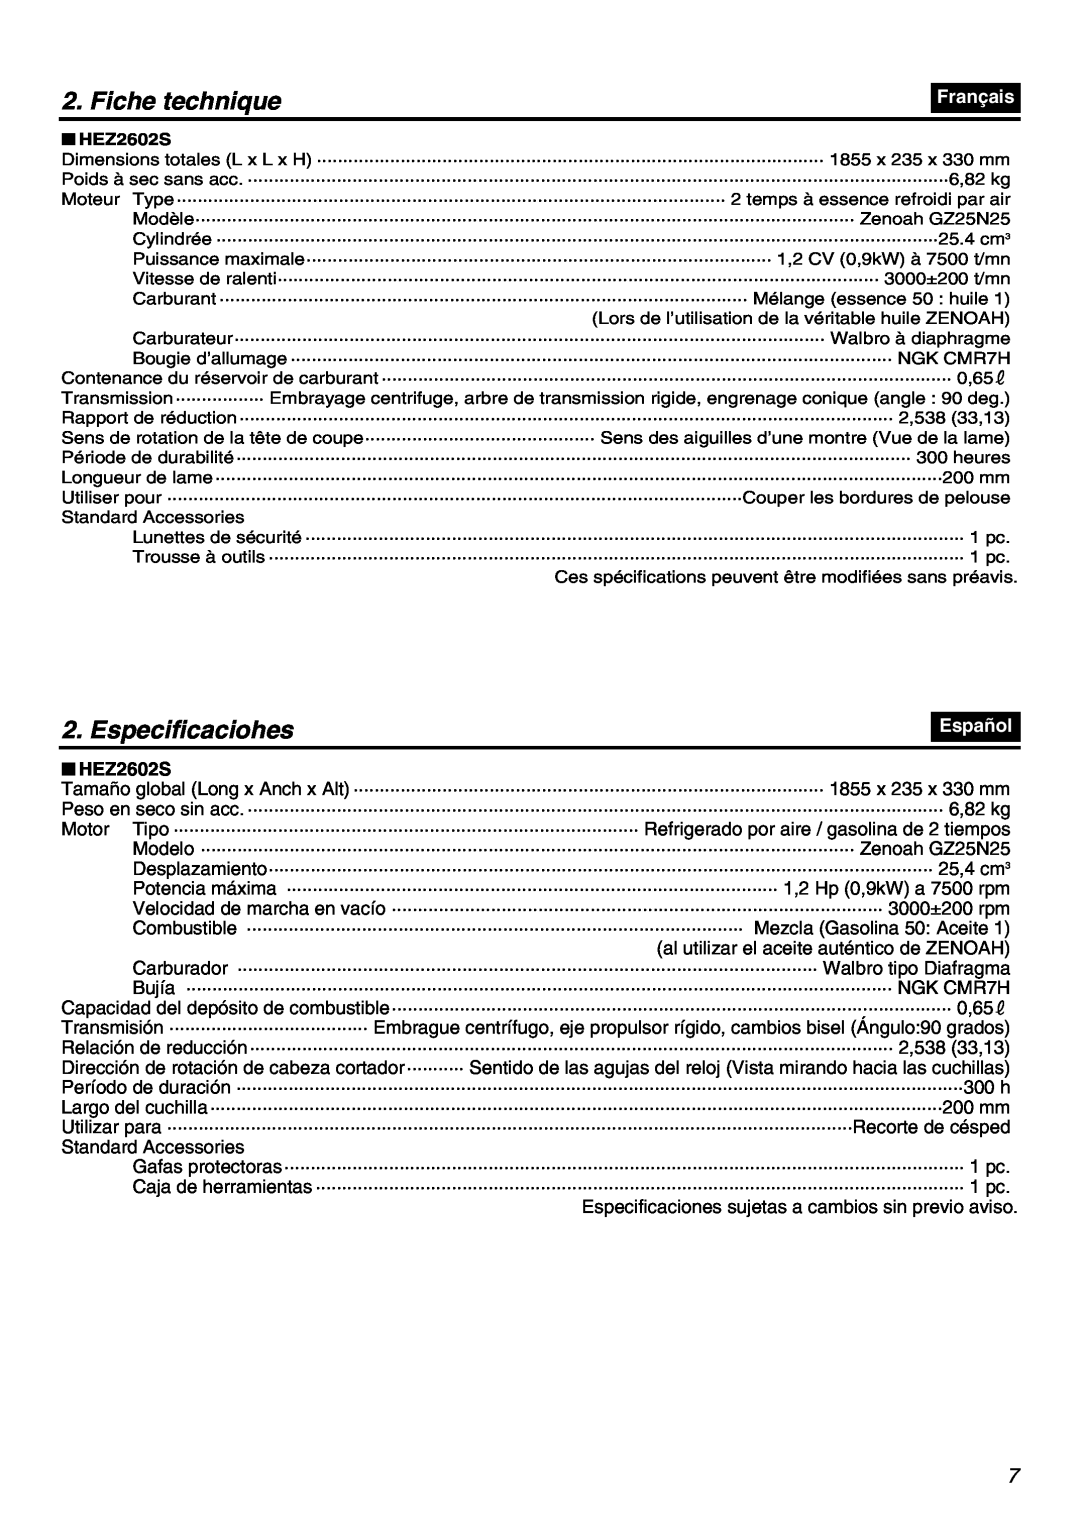 RedMax HEZ2602S Fiche technique, Especificaciohes, Français, Español, Especificaciones sujetas a cambios sin previo aviso 